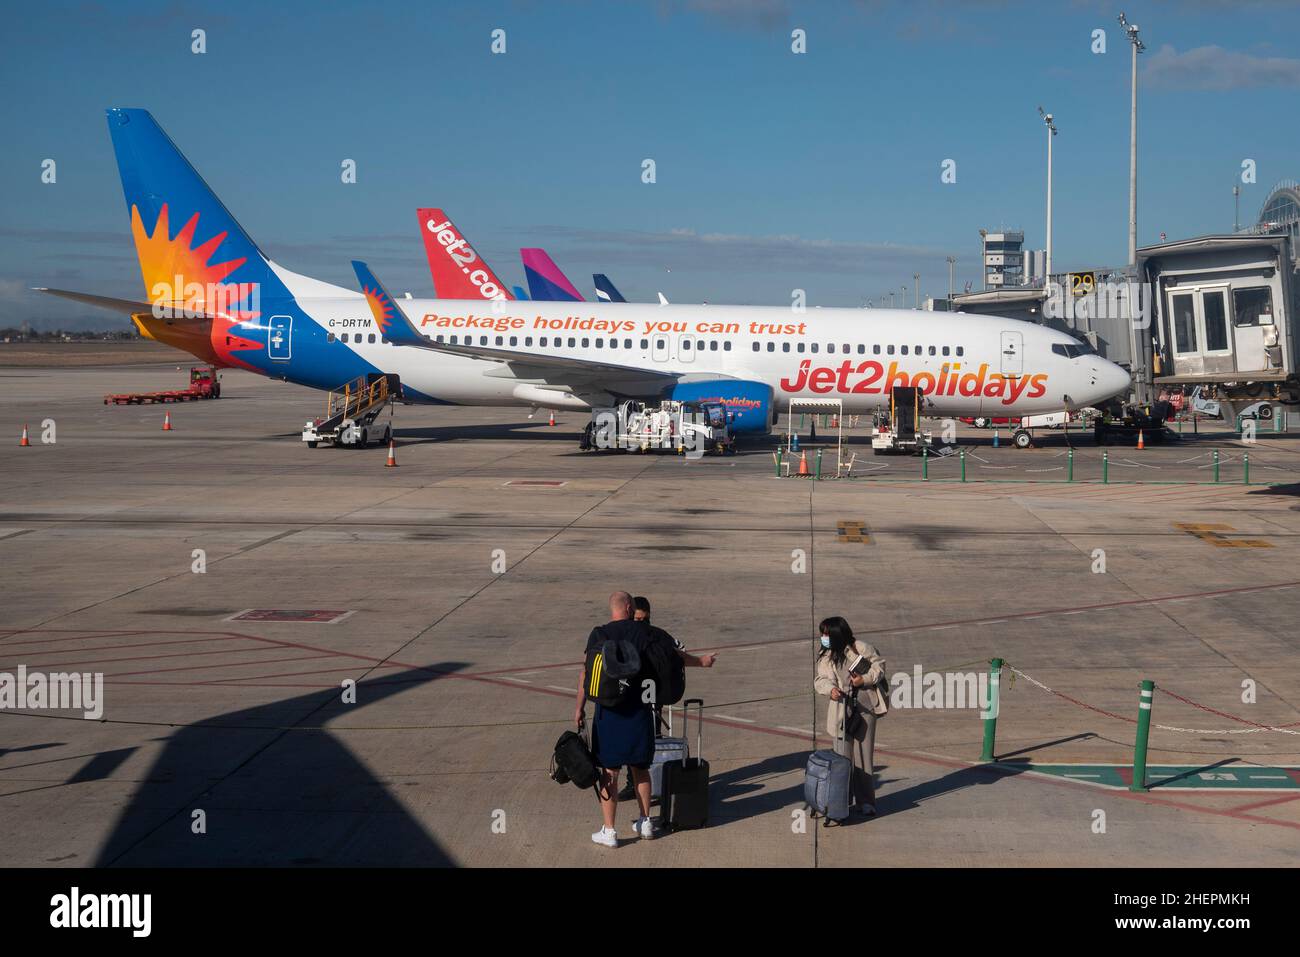 Aeroporto di Alicante Elche. Passeggeri che camminano verso un aereo, con  Jet2holidays Boeing 737 in stand. Costa Blanca, Spagna, UE. Branding dei pacchetti  vacanze Foto stock - Alamy